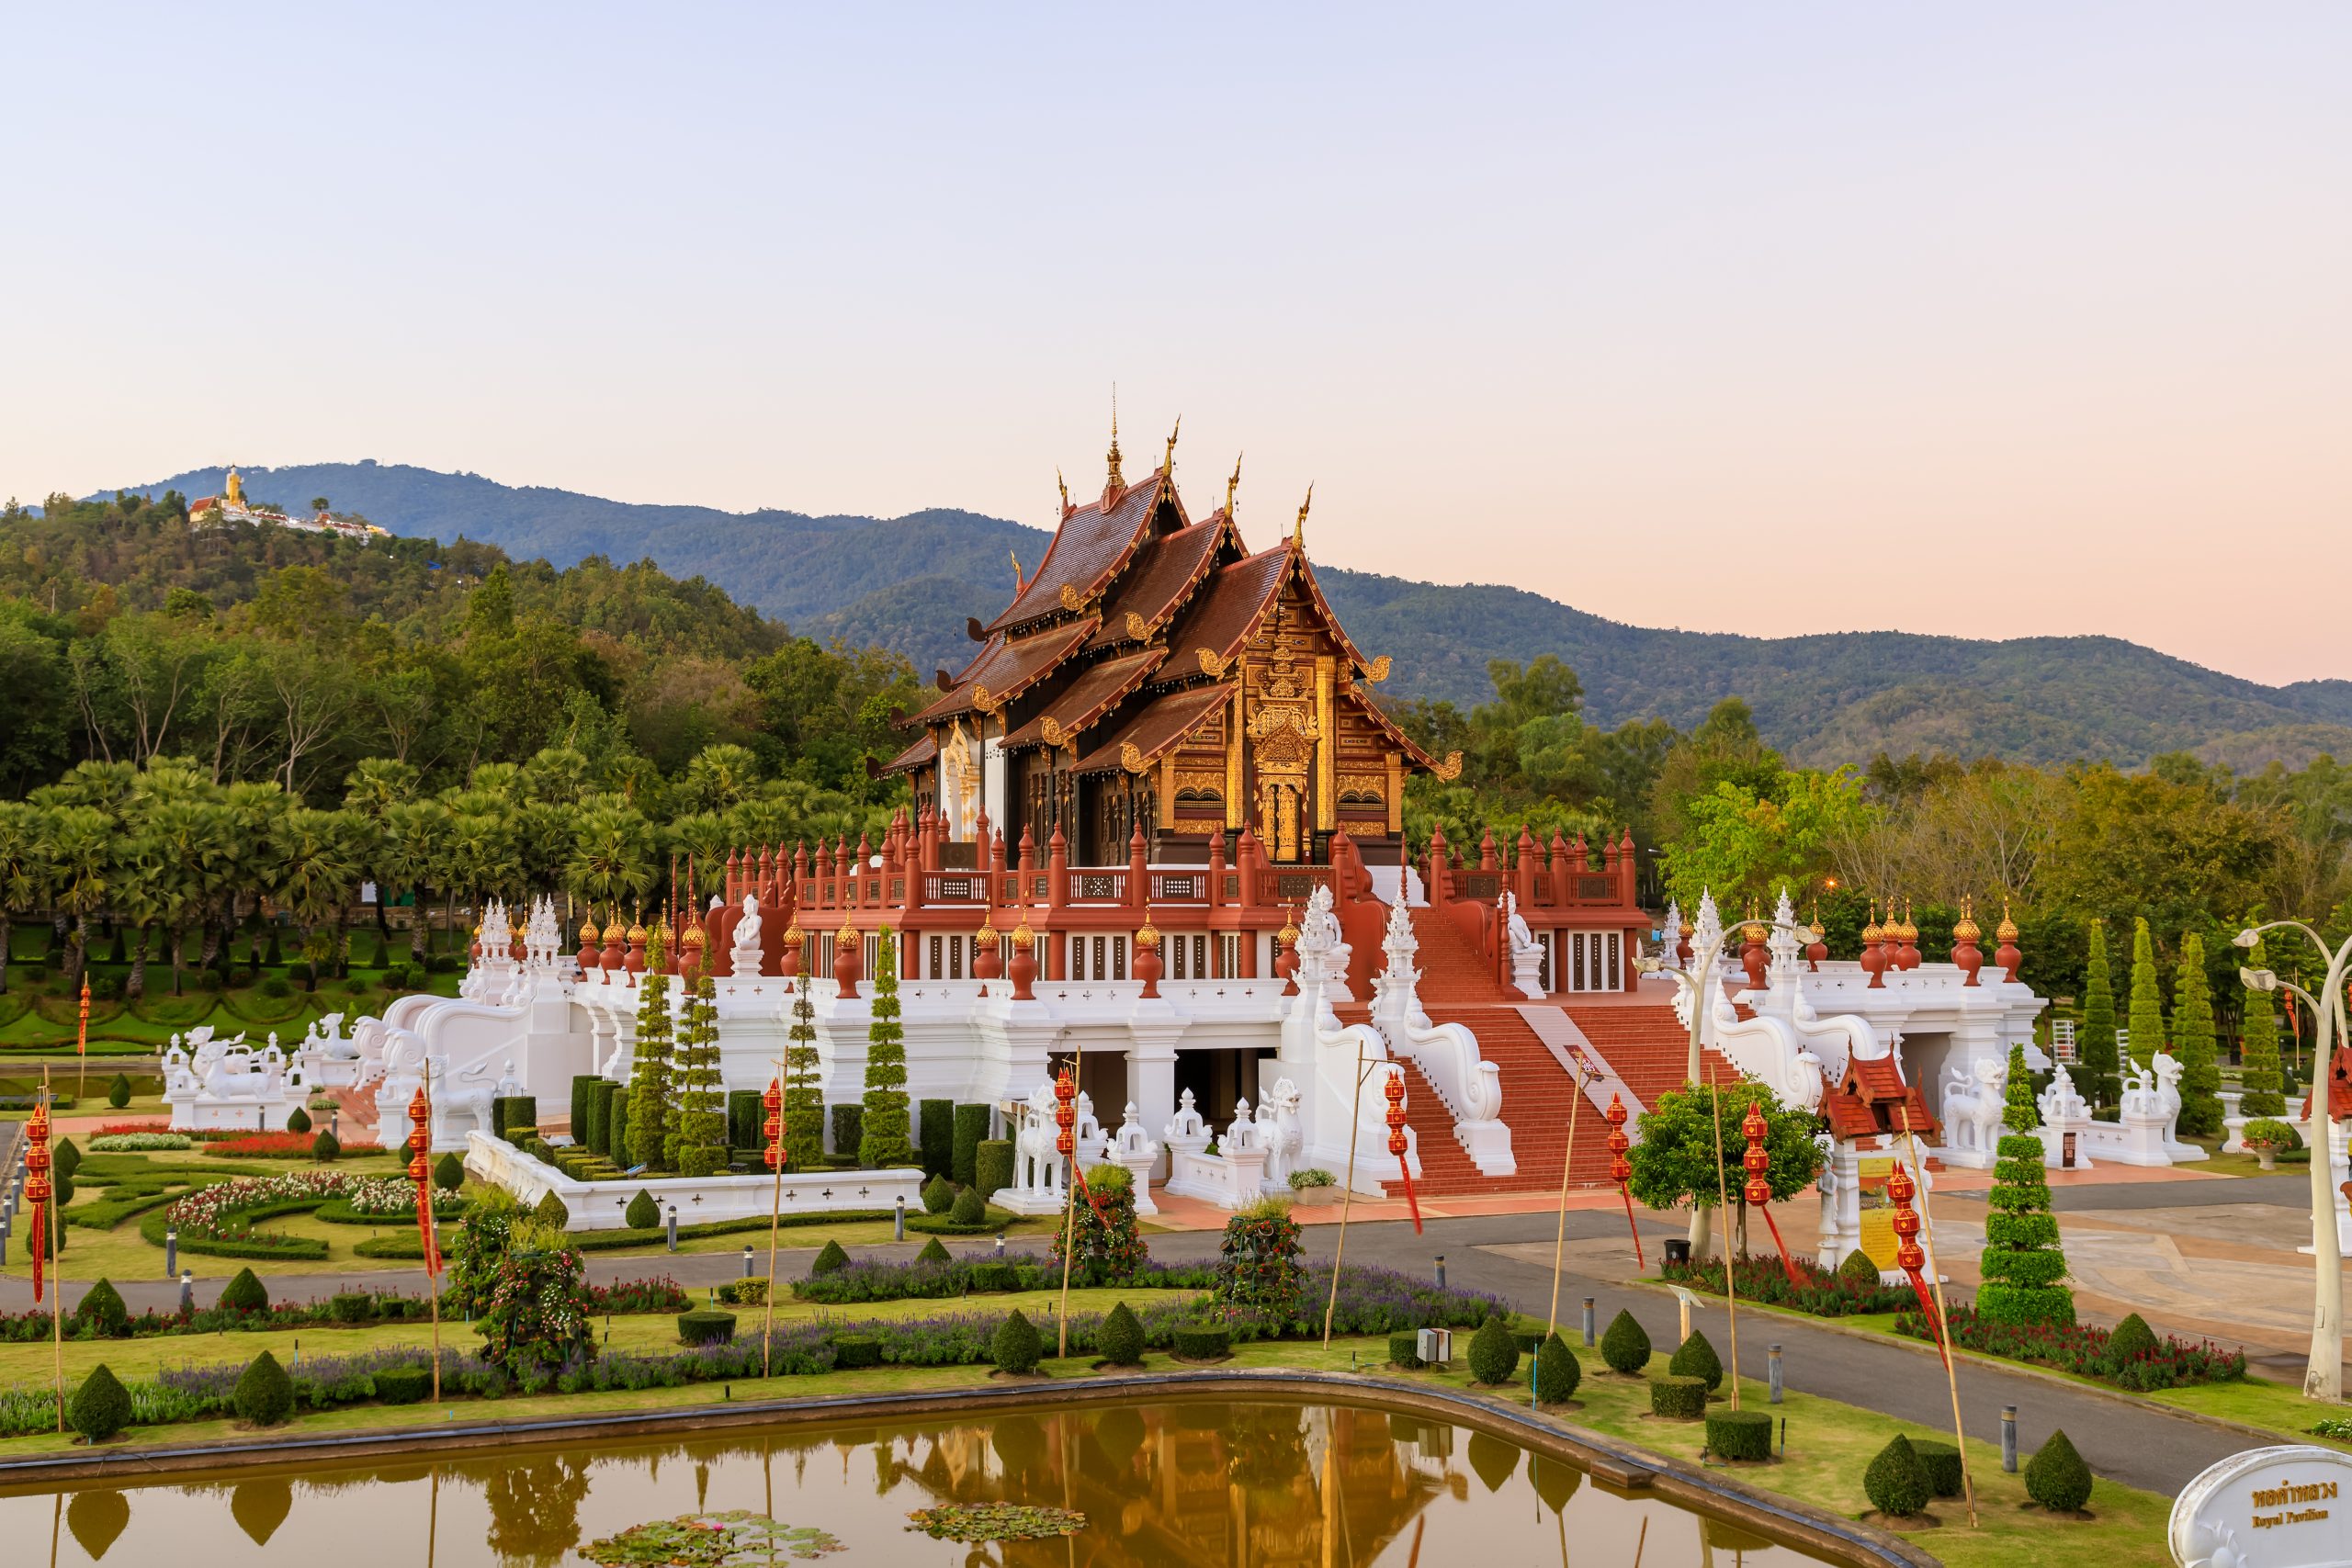 Royal Pavilion (Ho Kum Luang) Lanna style pavilion in Royal Flora Rajapruek Park botanical garden, Chiang Mai, Thailand.